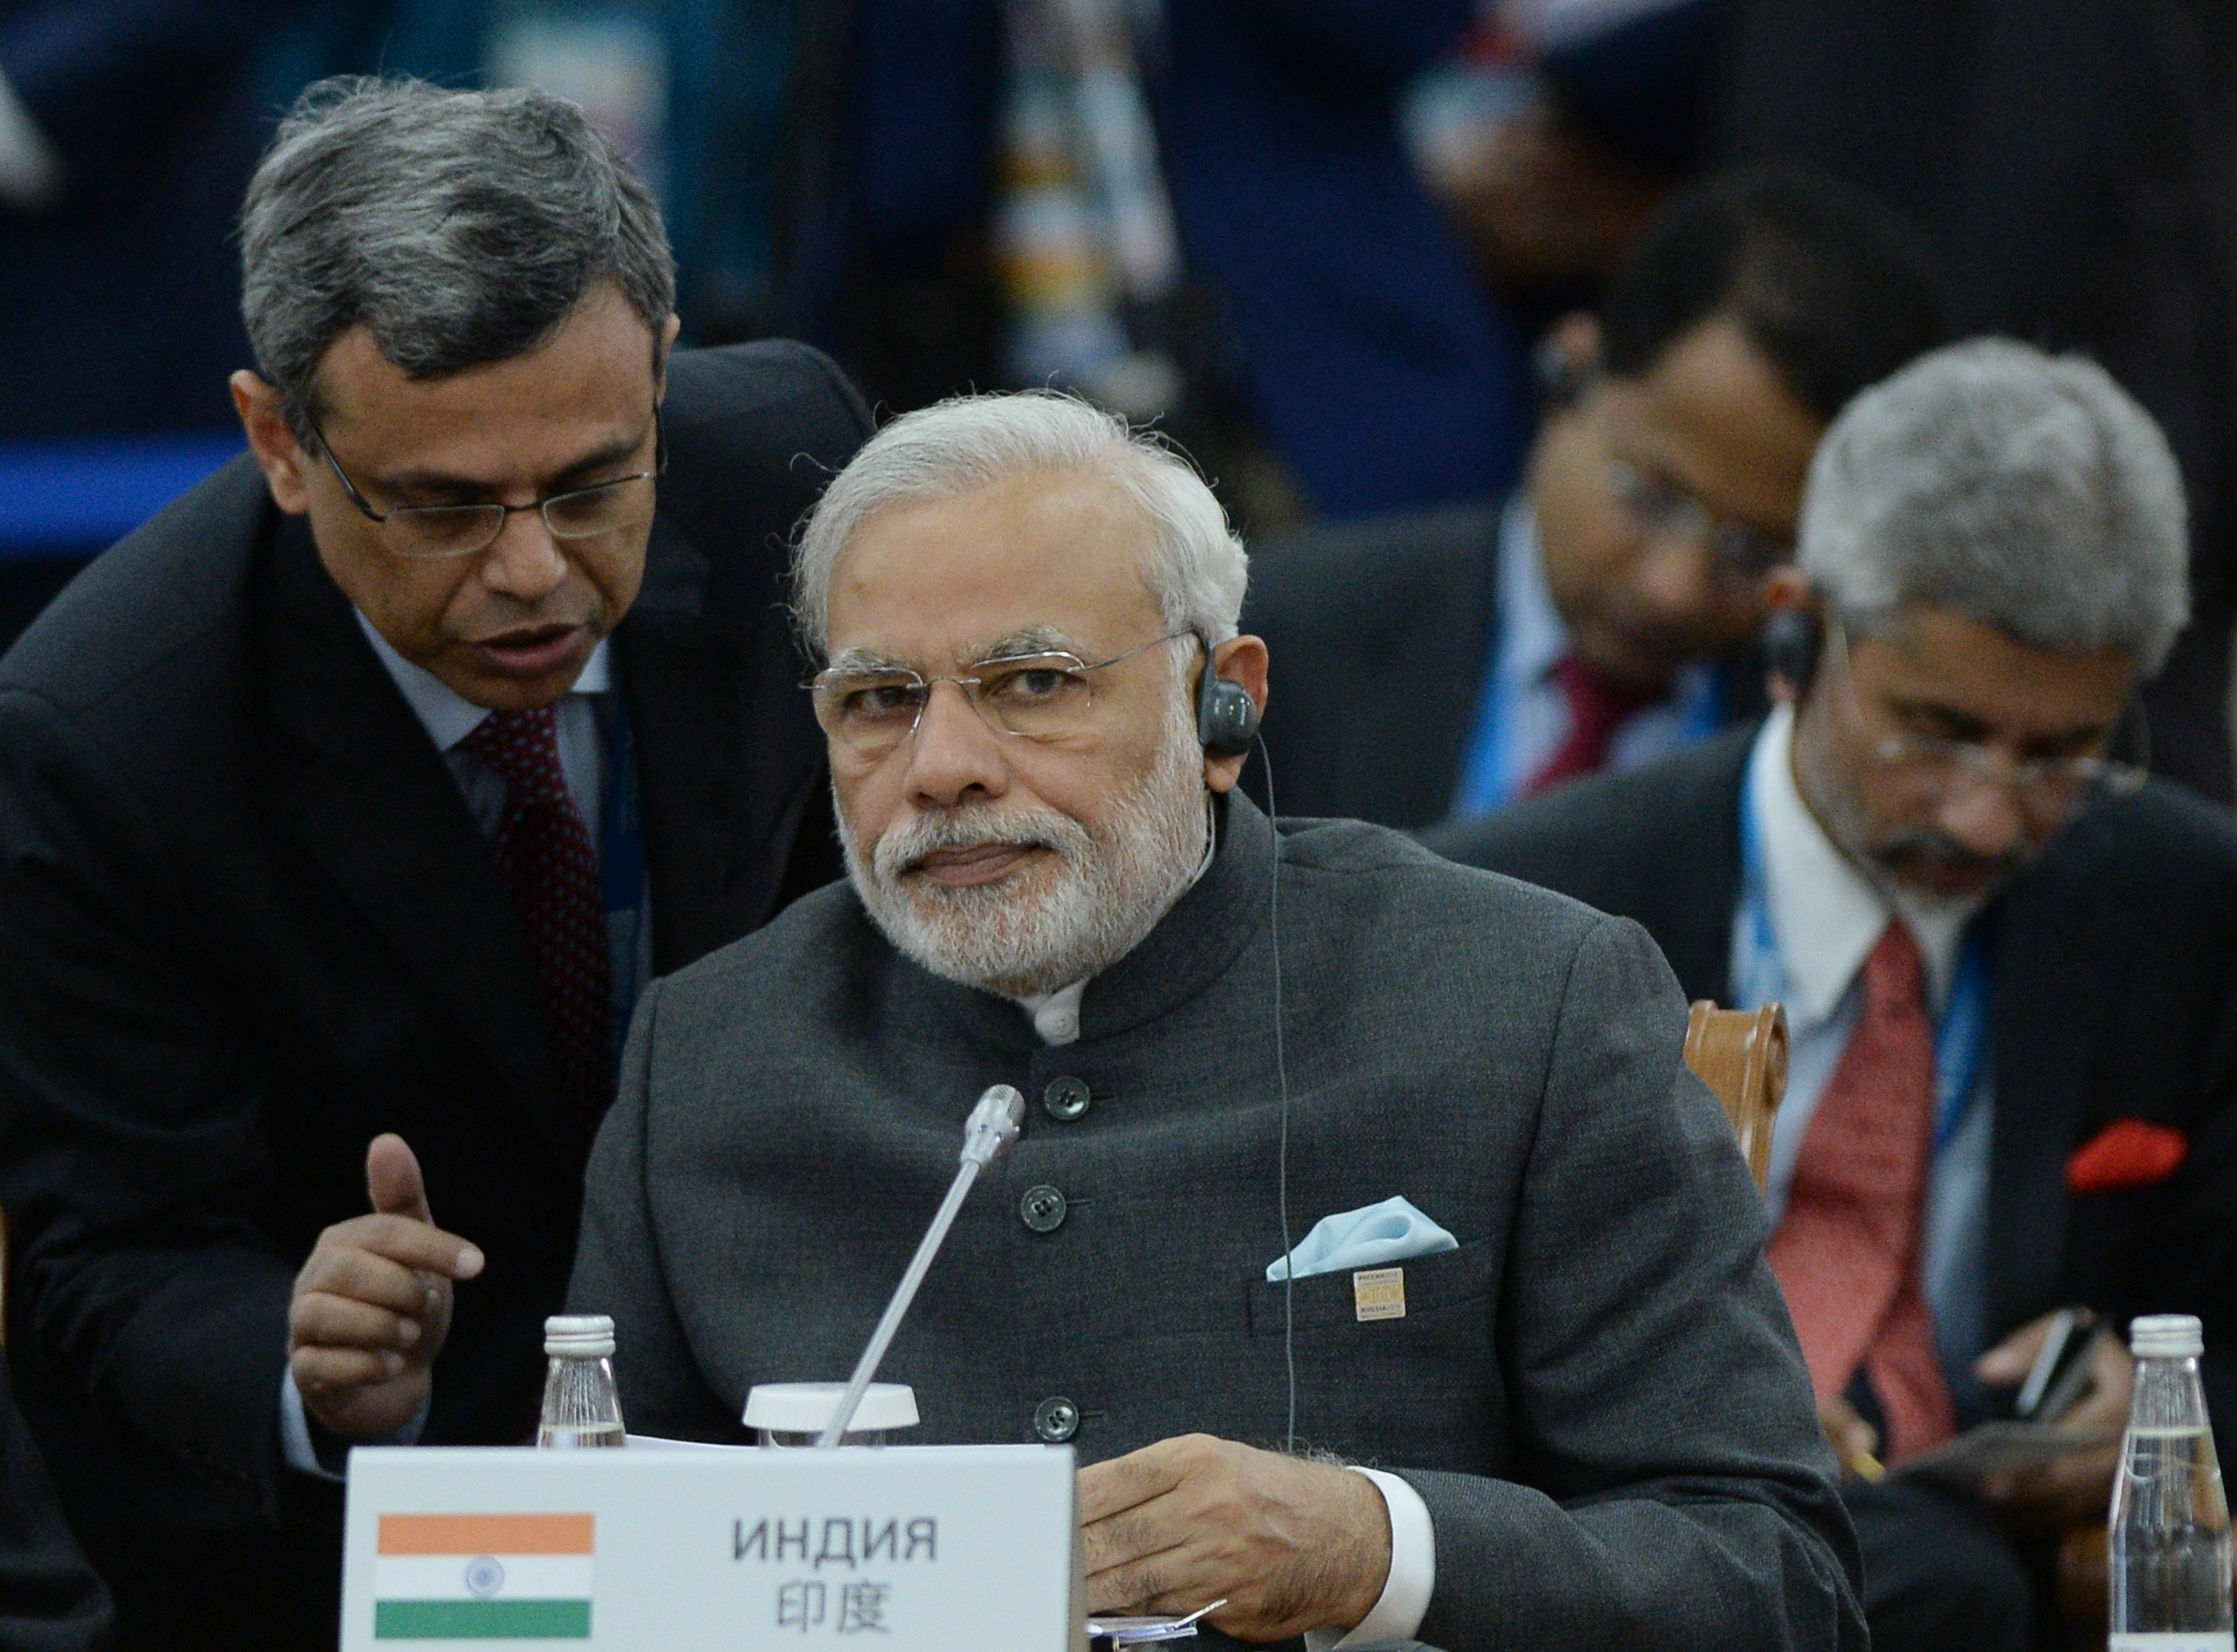 Narendra Modi at SCO summit in Ufa in 2015.